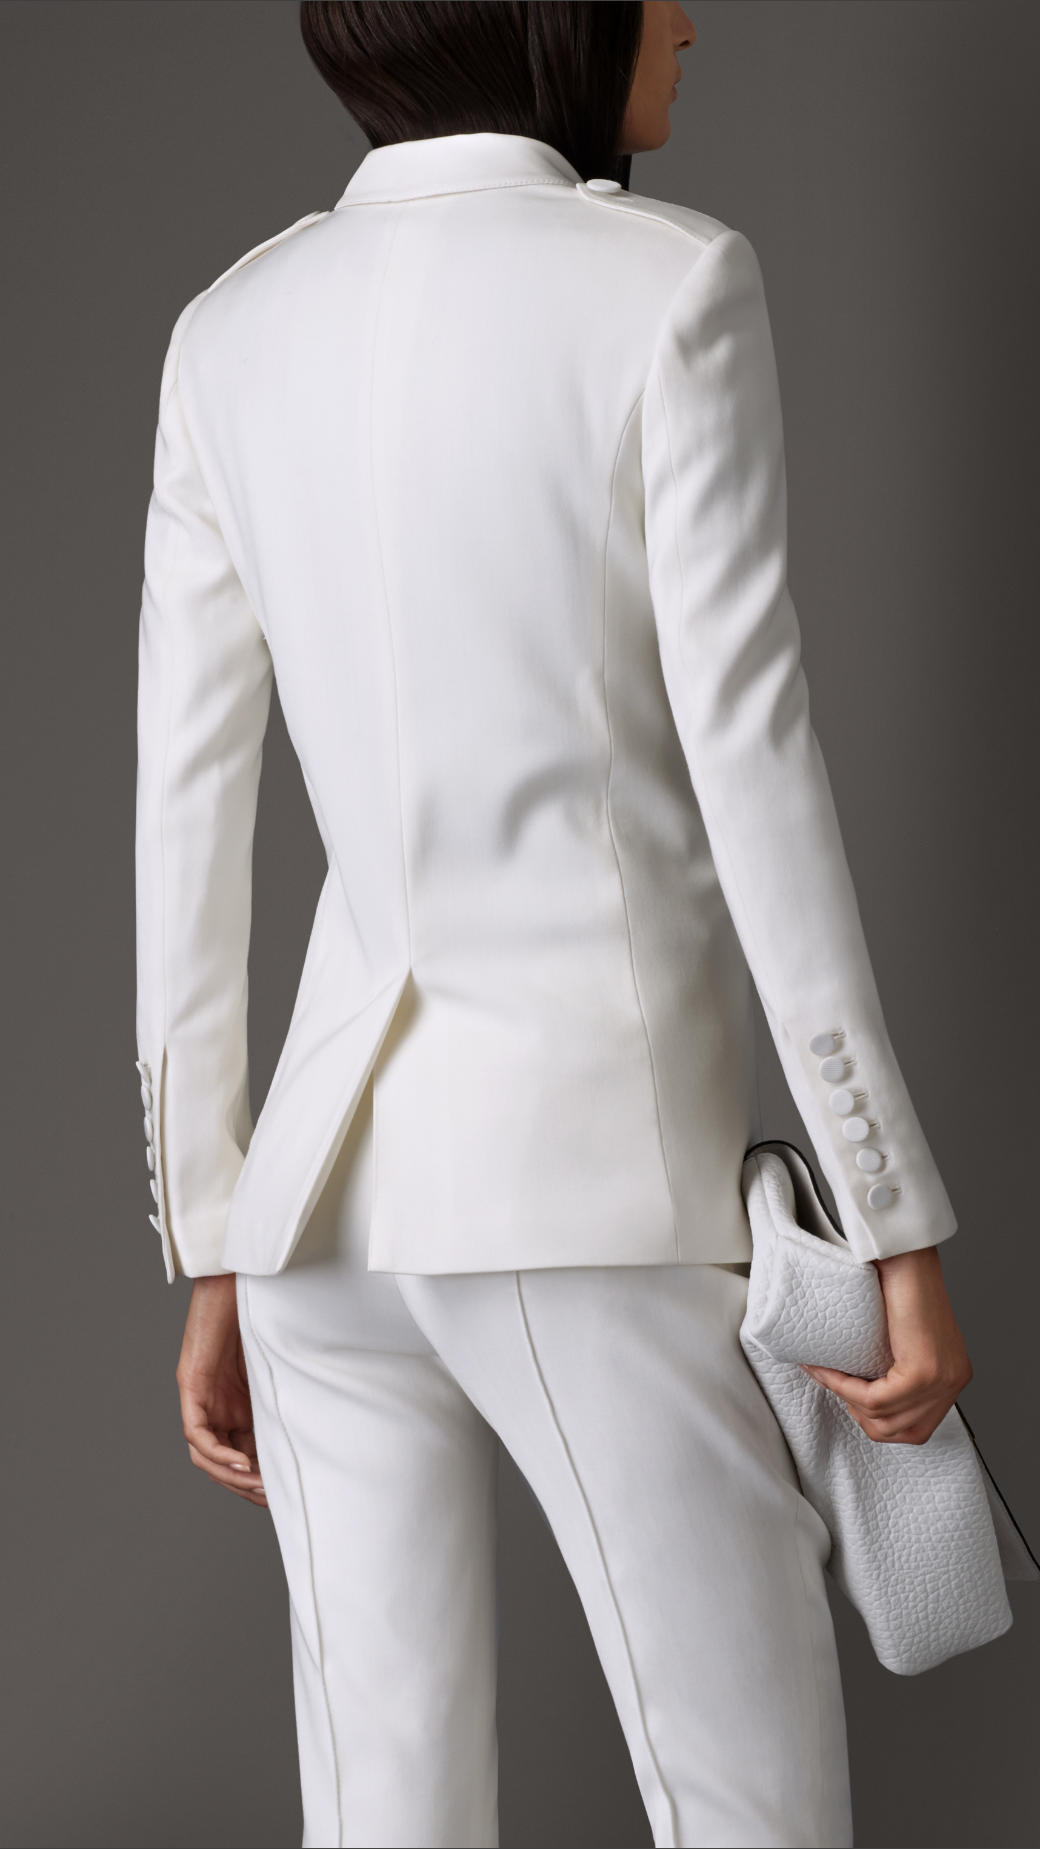 burberry white tuxedo jacket